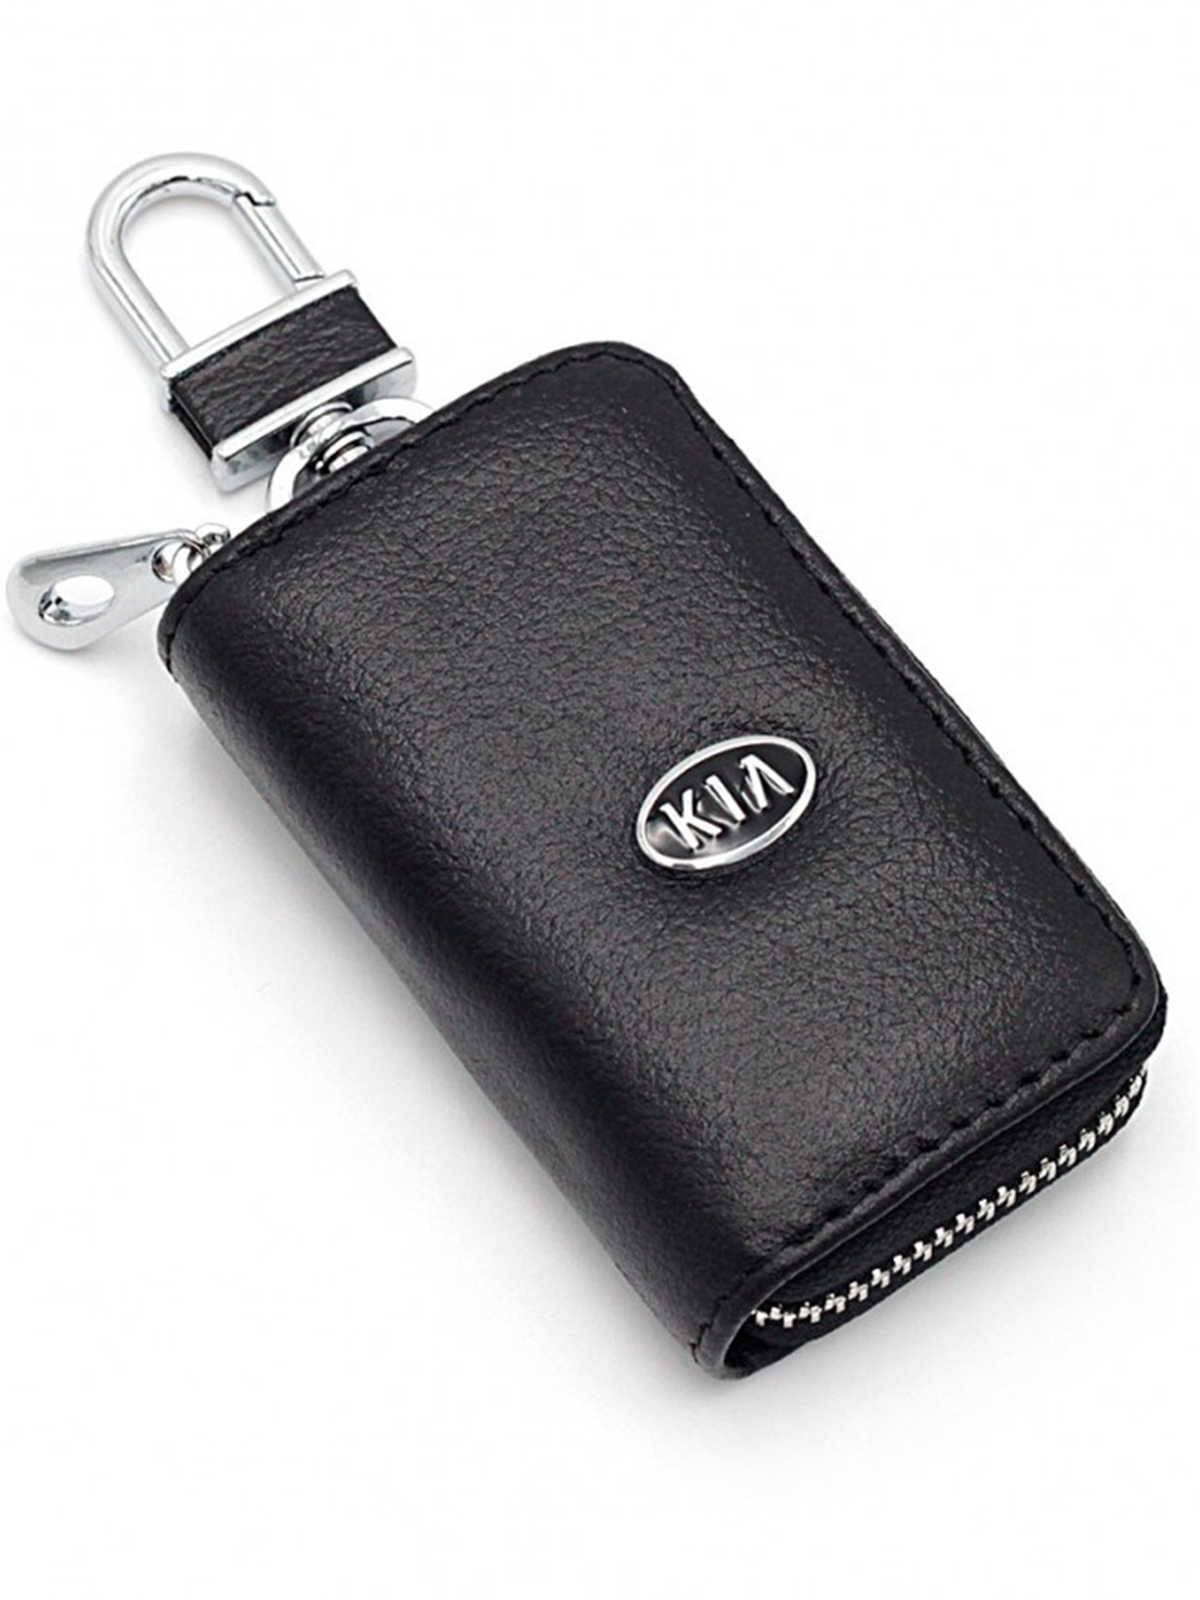 Ключница унисекс JINN avto/Kia черная(avto/Kia)